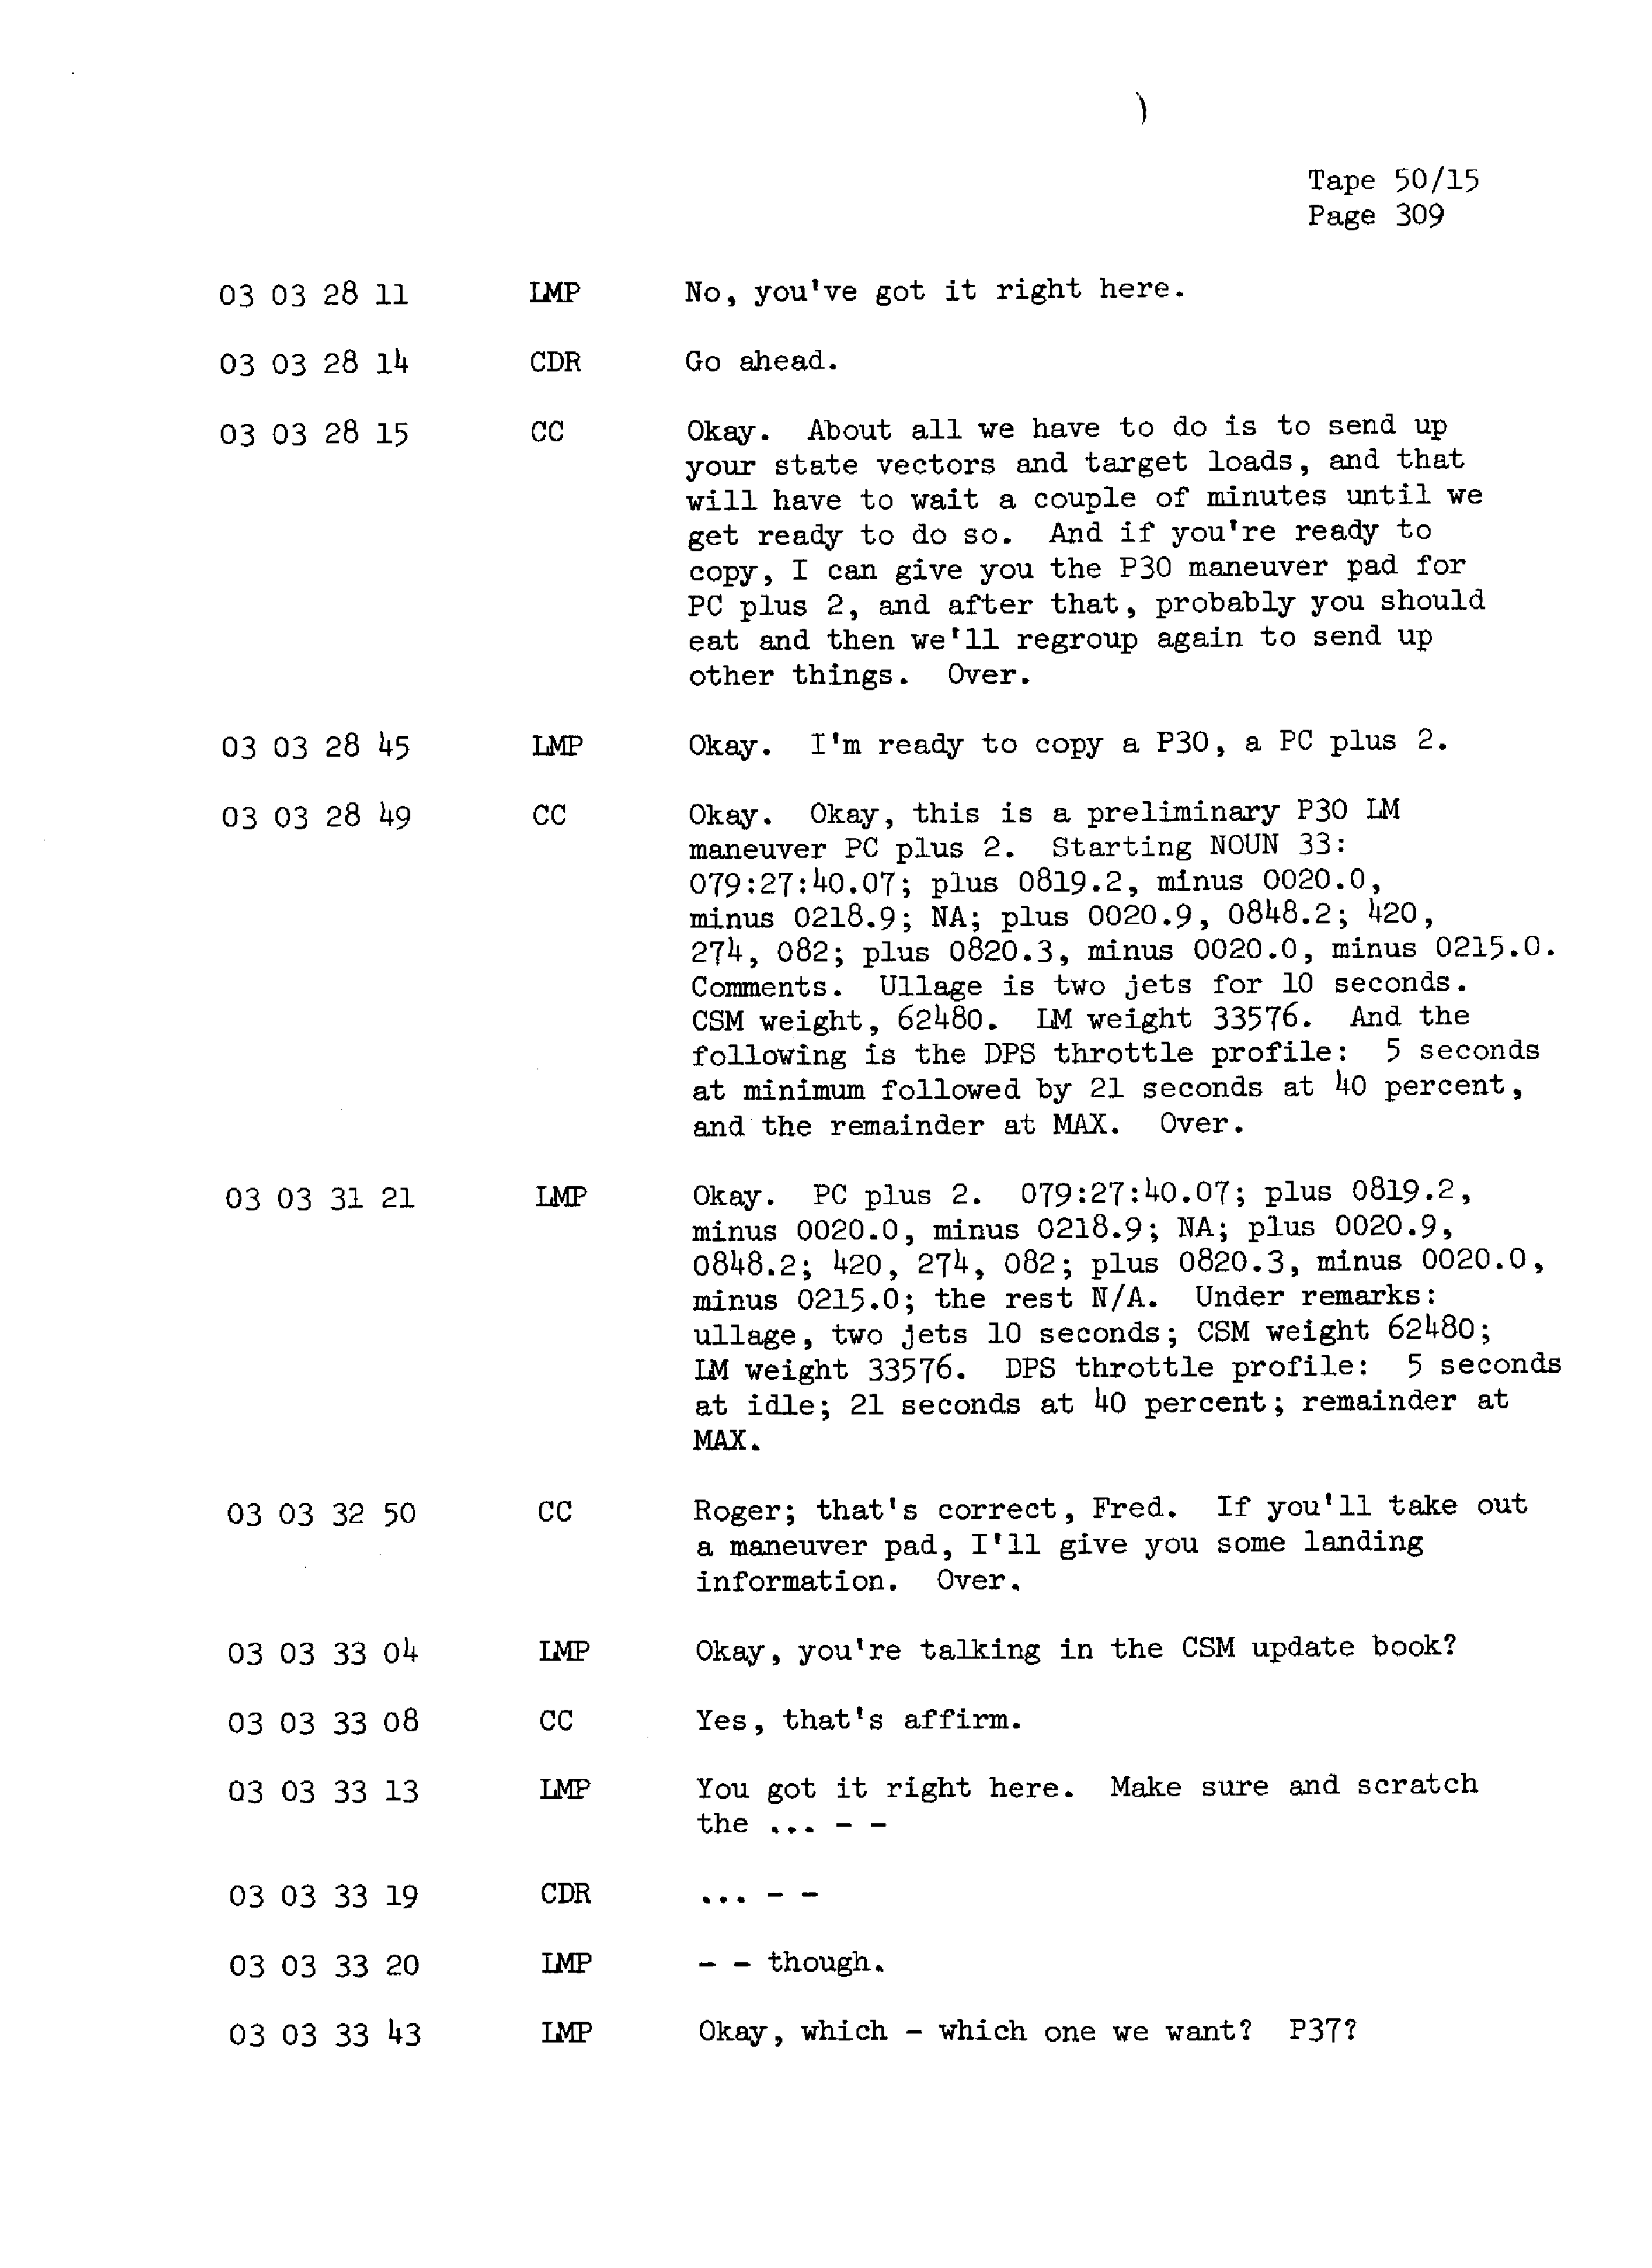 Page 316 of Apollo 13’s original transcript